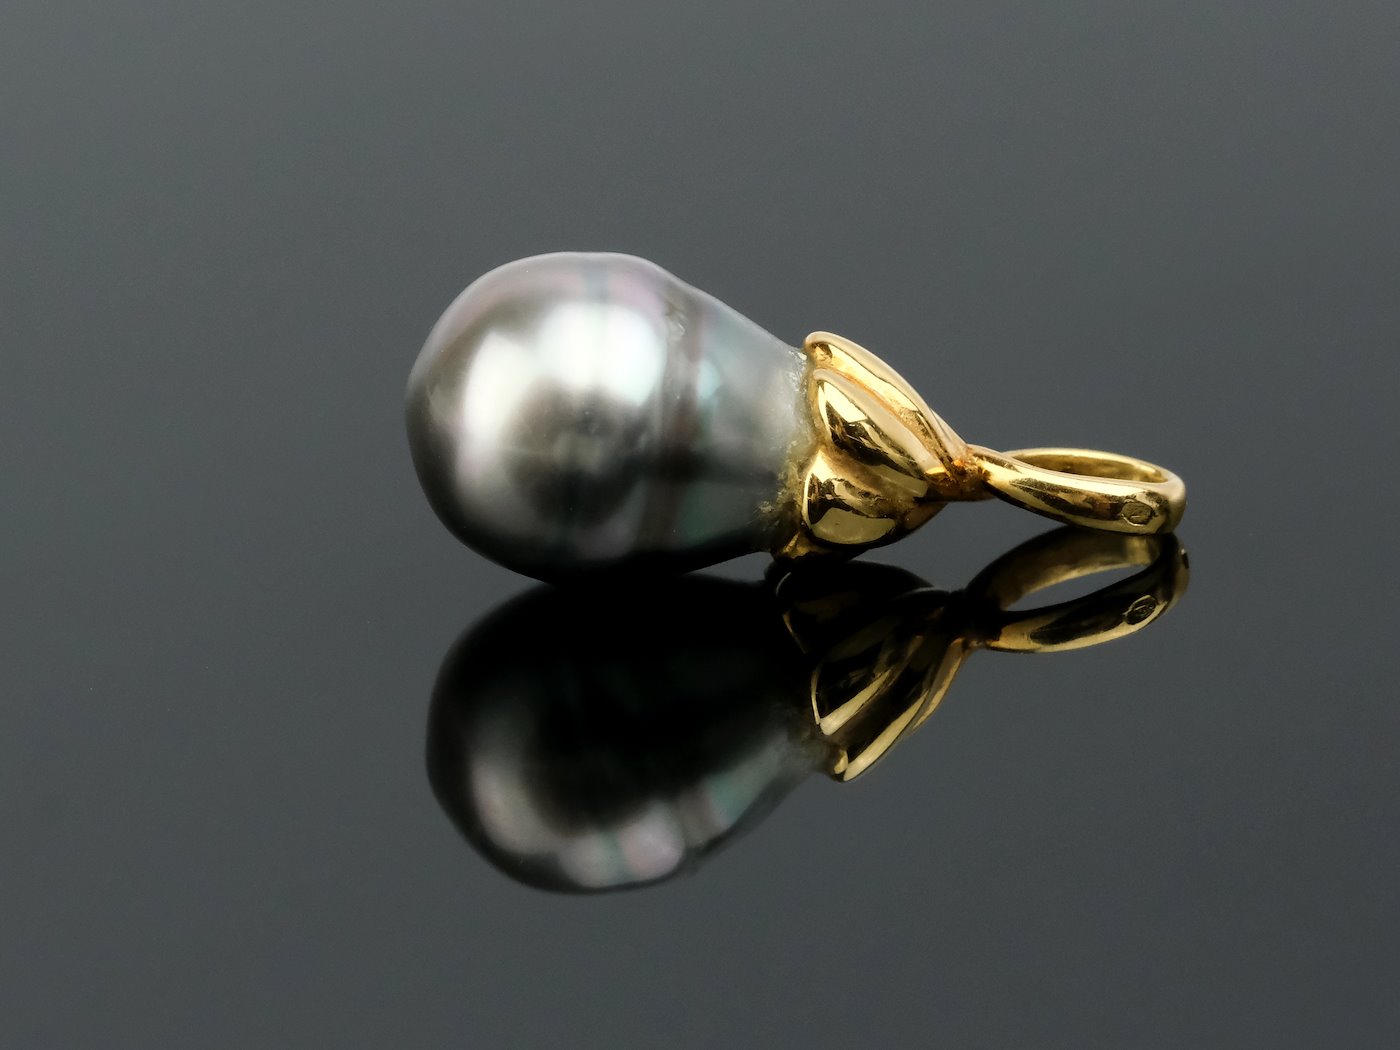 .. - Přívěšek s perlou, zlato 750/1000, značeno platnou puncovní značkou "kohout", hrubá hmotnost 3,45 g